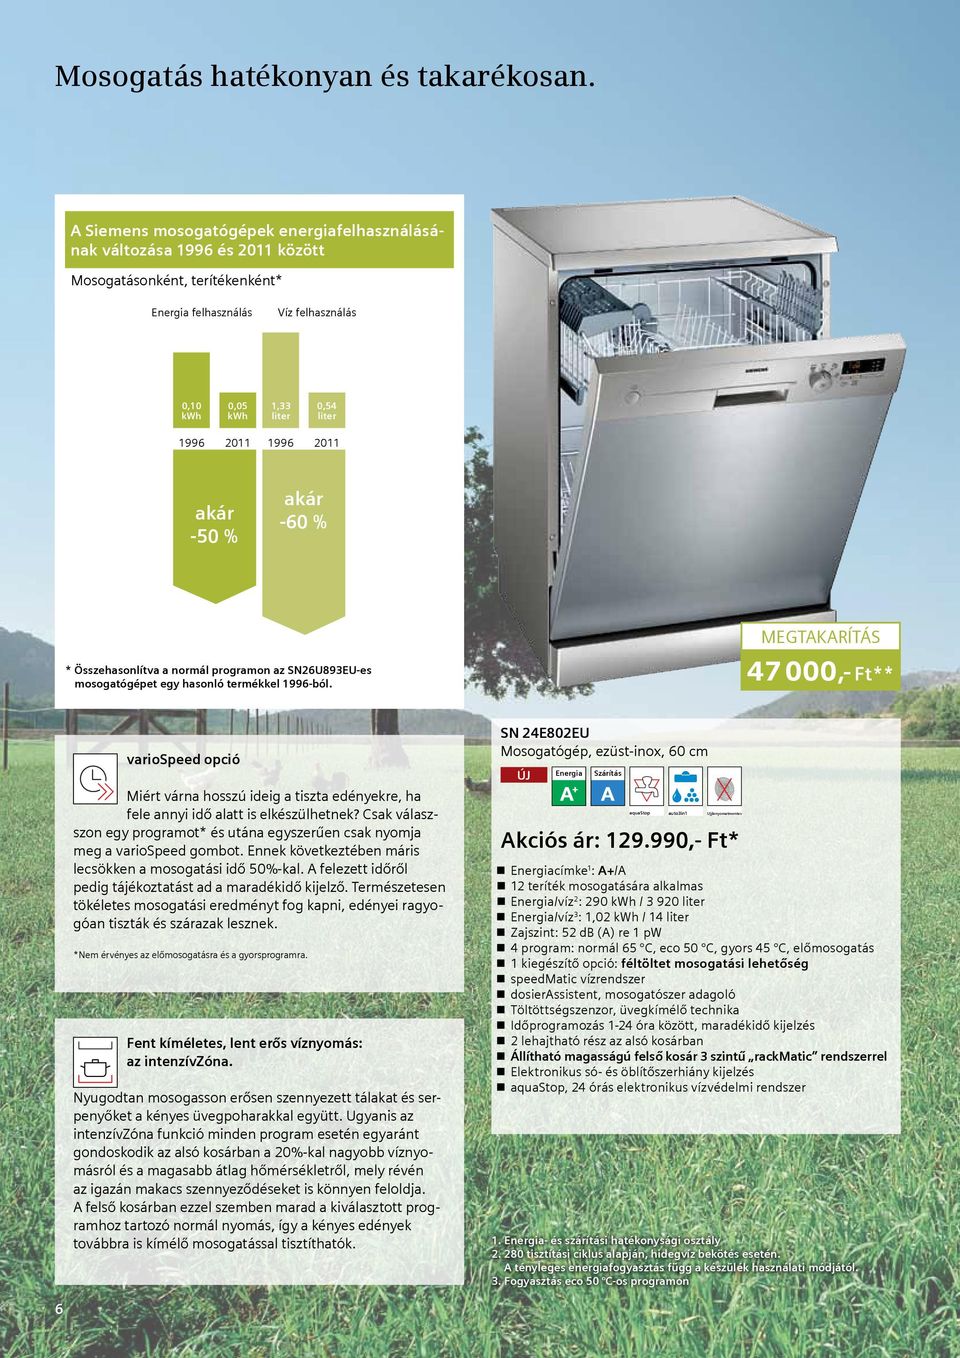 -50 % akár -60 % * Összehasonlítva a normál programon az SN26U893EU-es mosogatógépet egy hasonló termékkel 1996-ból.